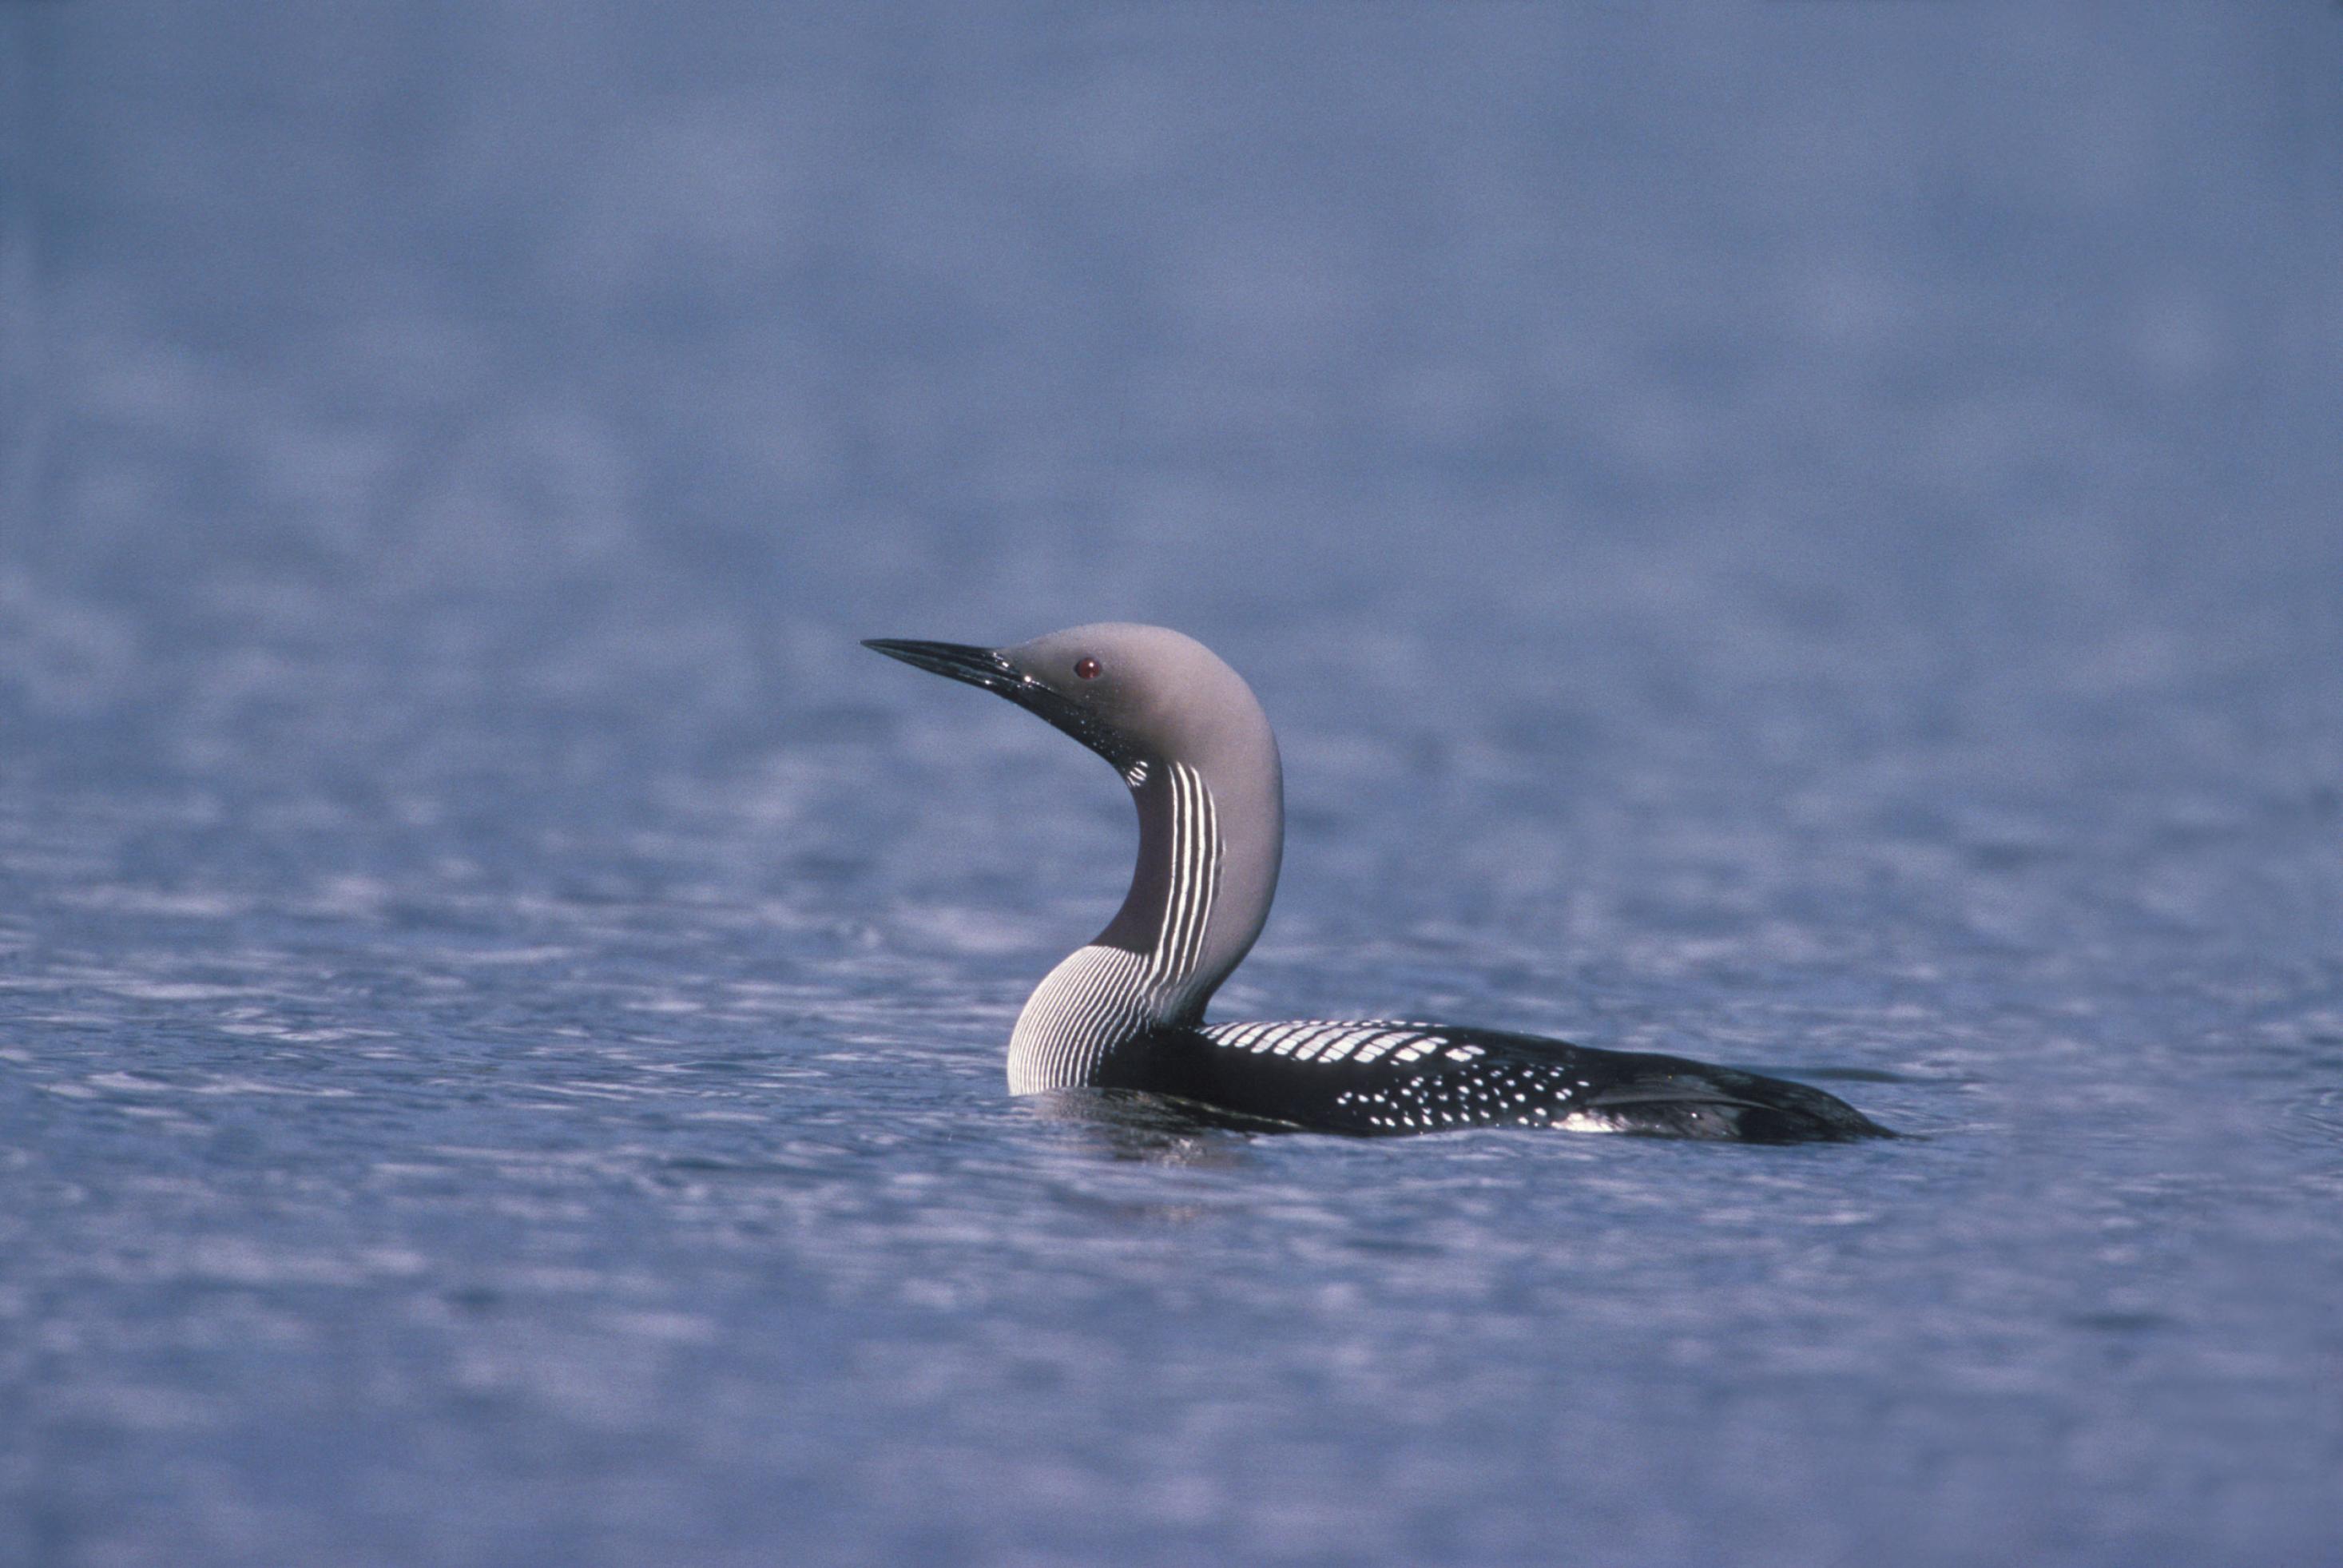 Vogel mit spitzem Schnabel, grauen Federn und schwarz-weißen Streifen auf dem Wasser.